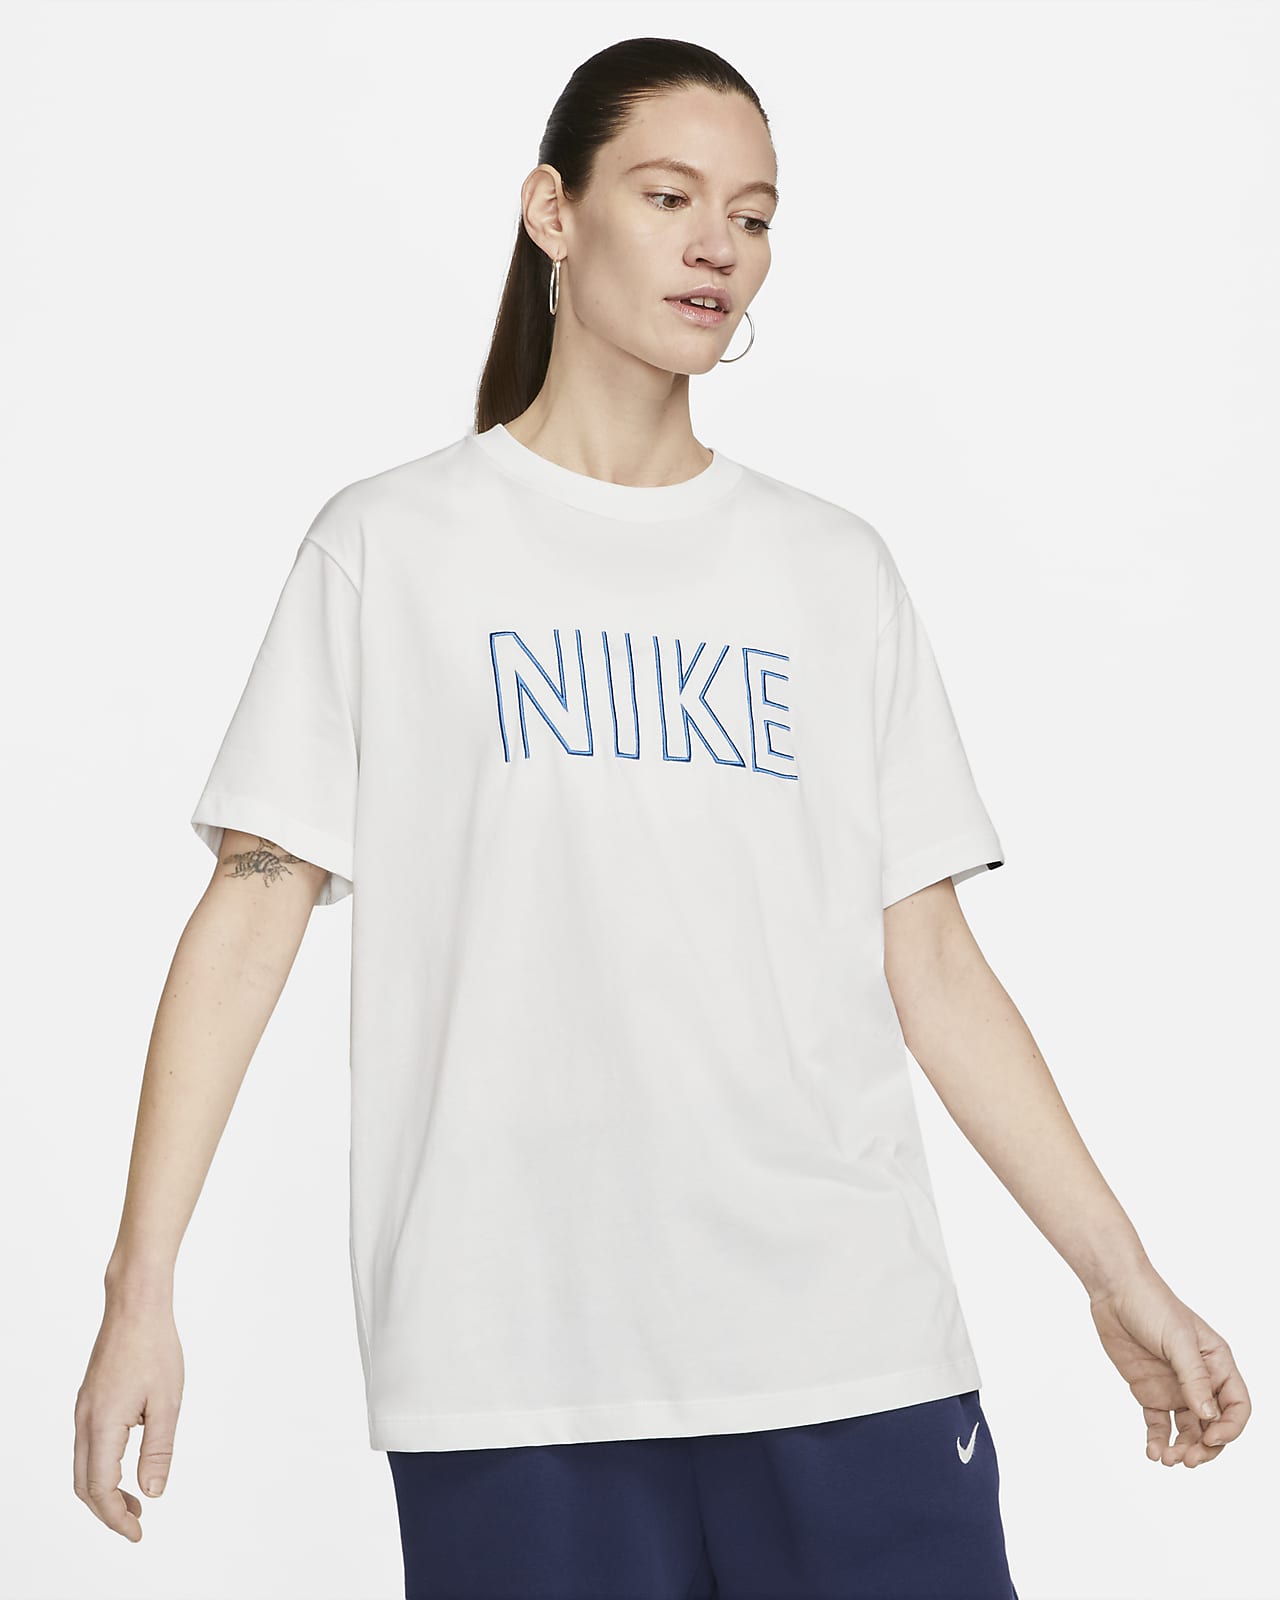 Nike - Mujer. ES